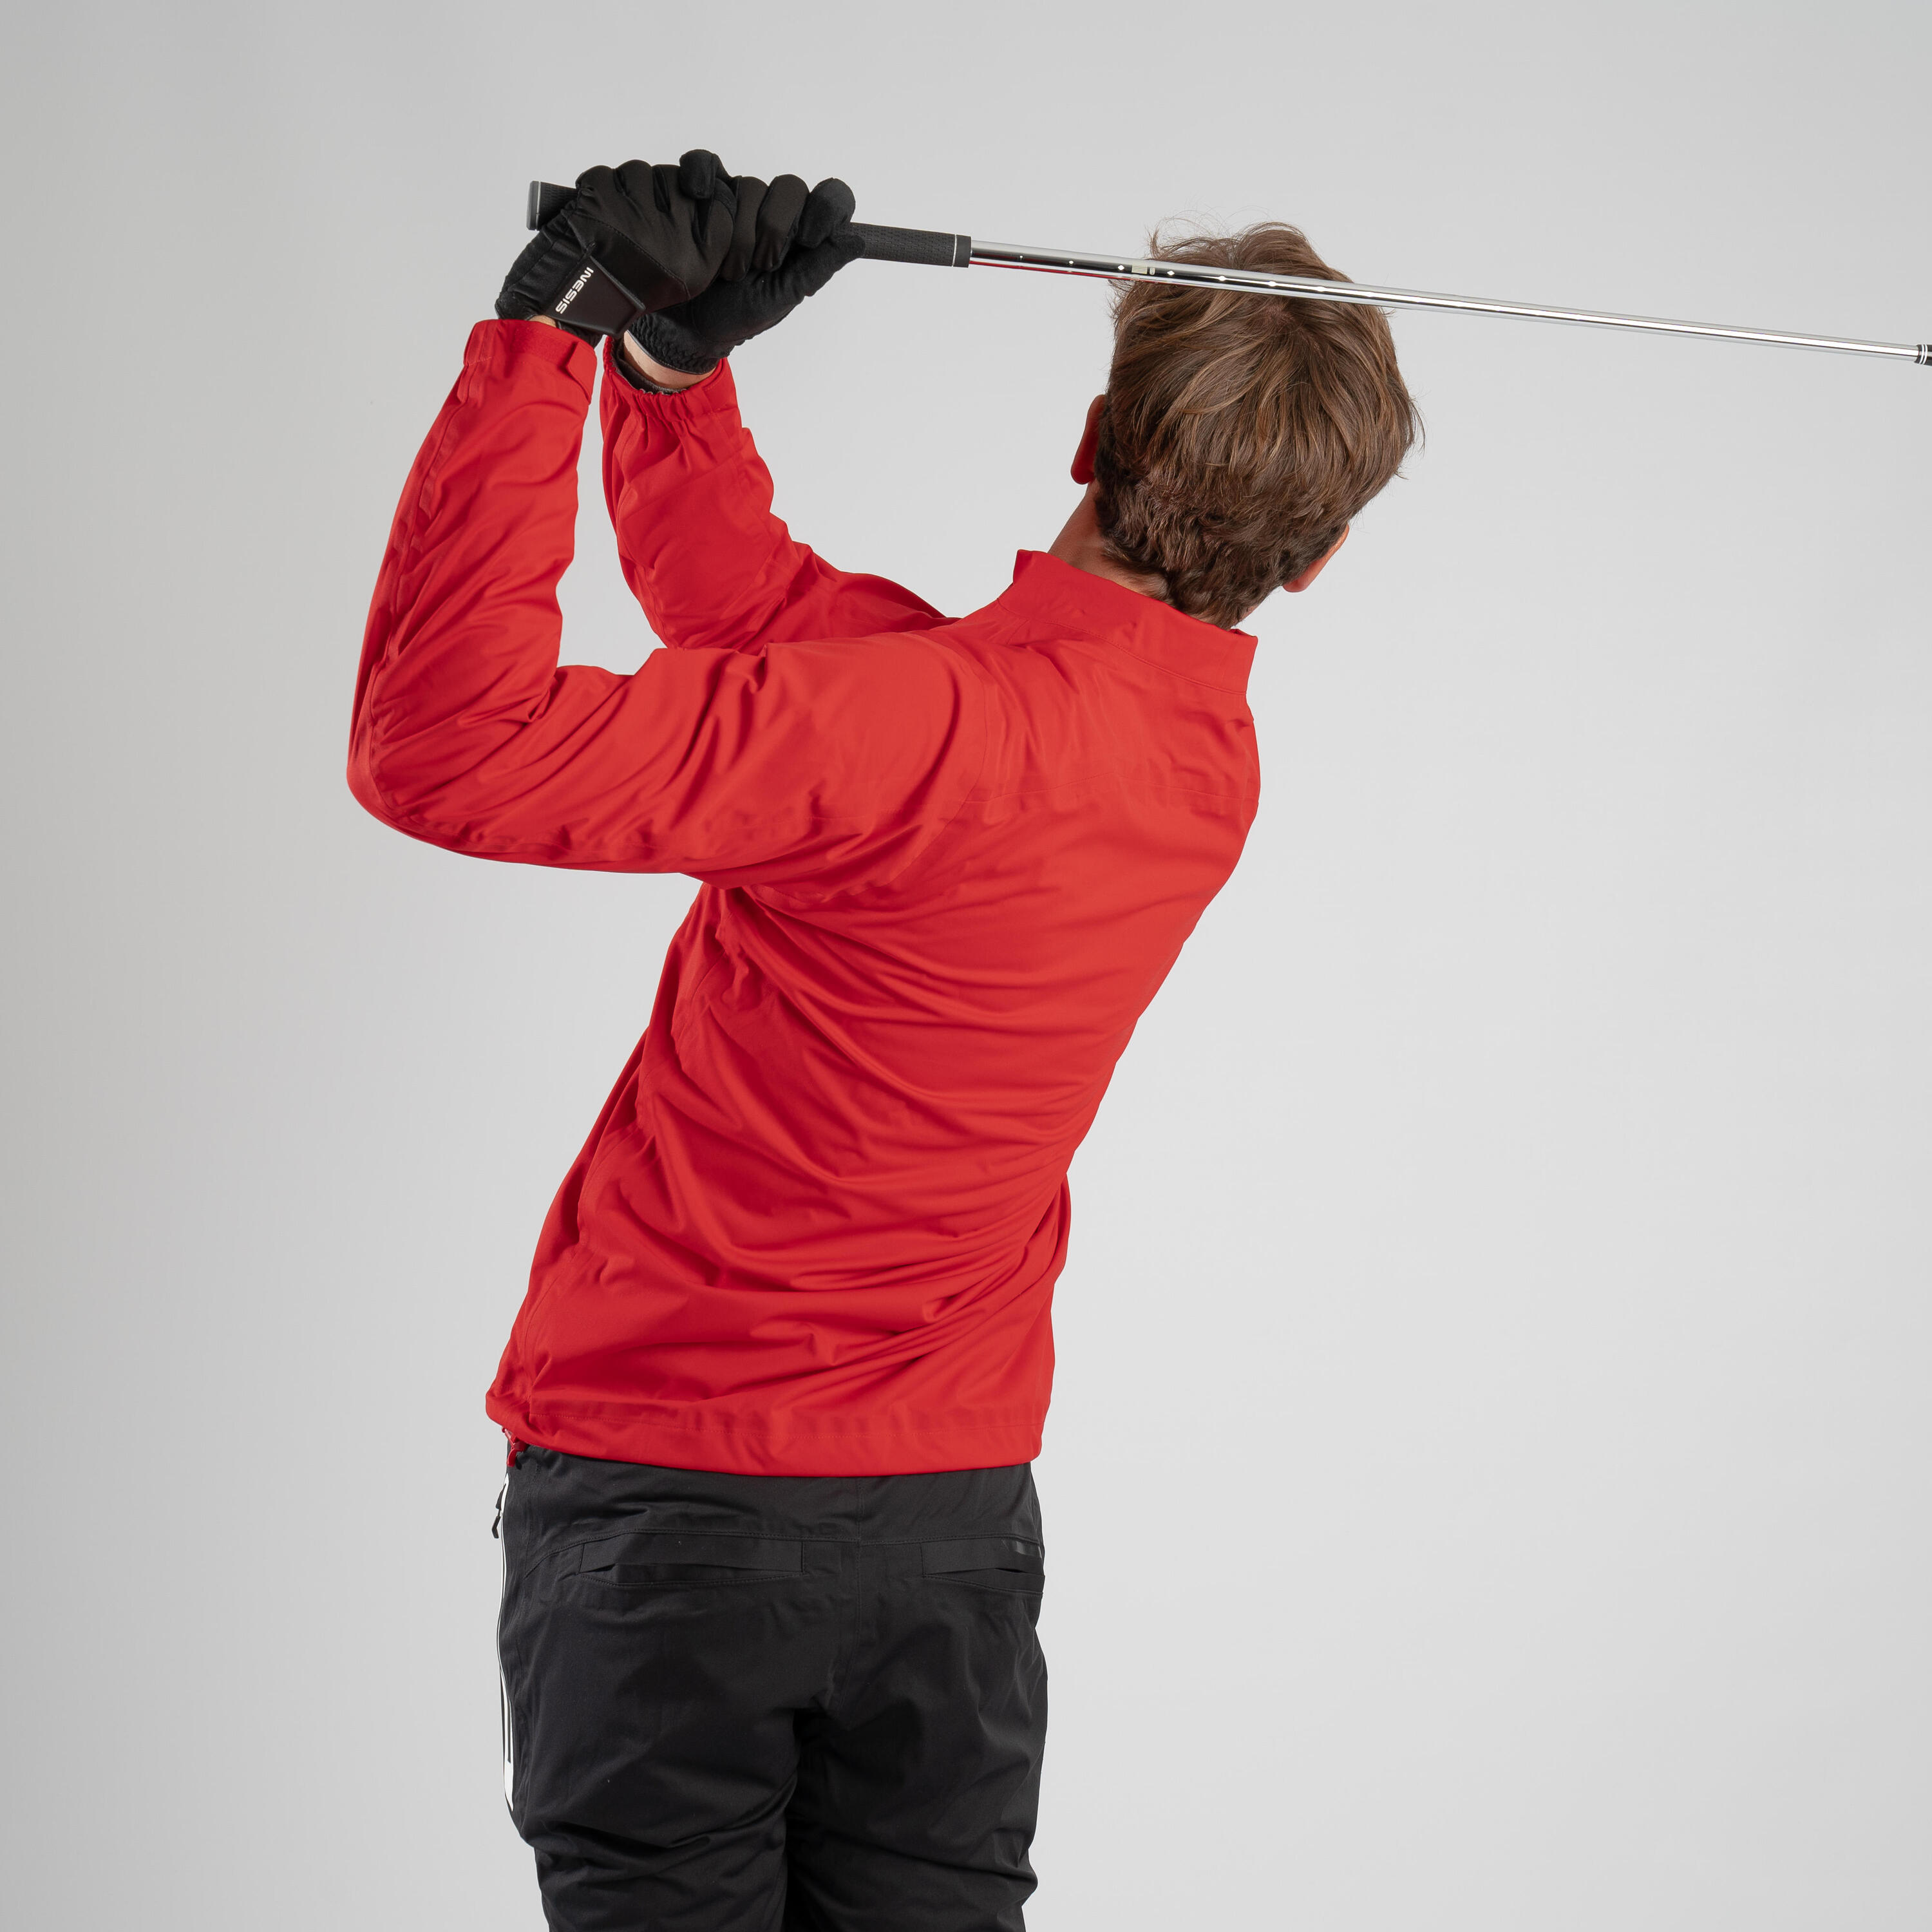 Men's golf waterproof rain jacket - RW500 red INESIS | Decathlon